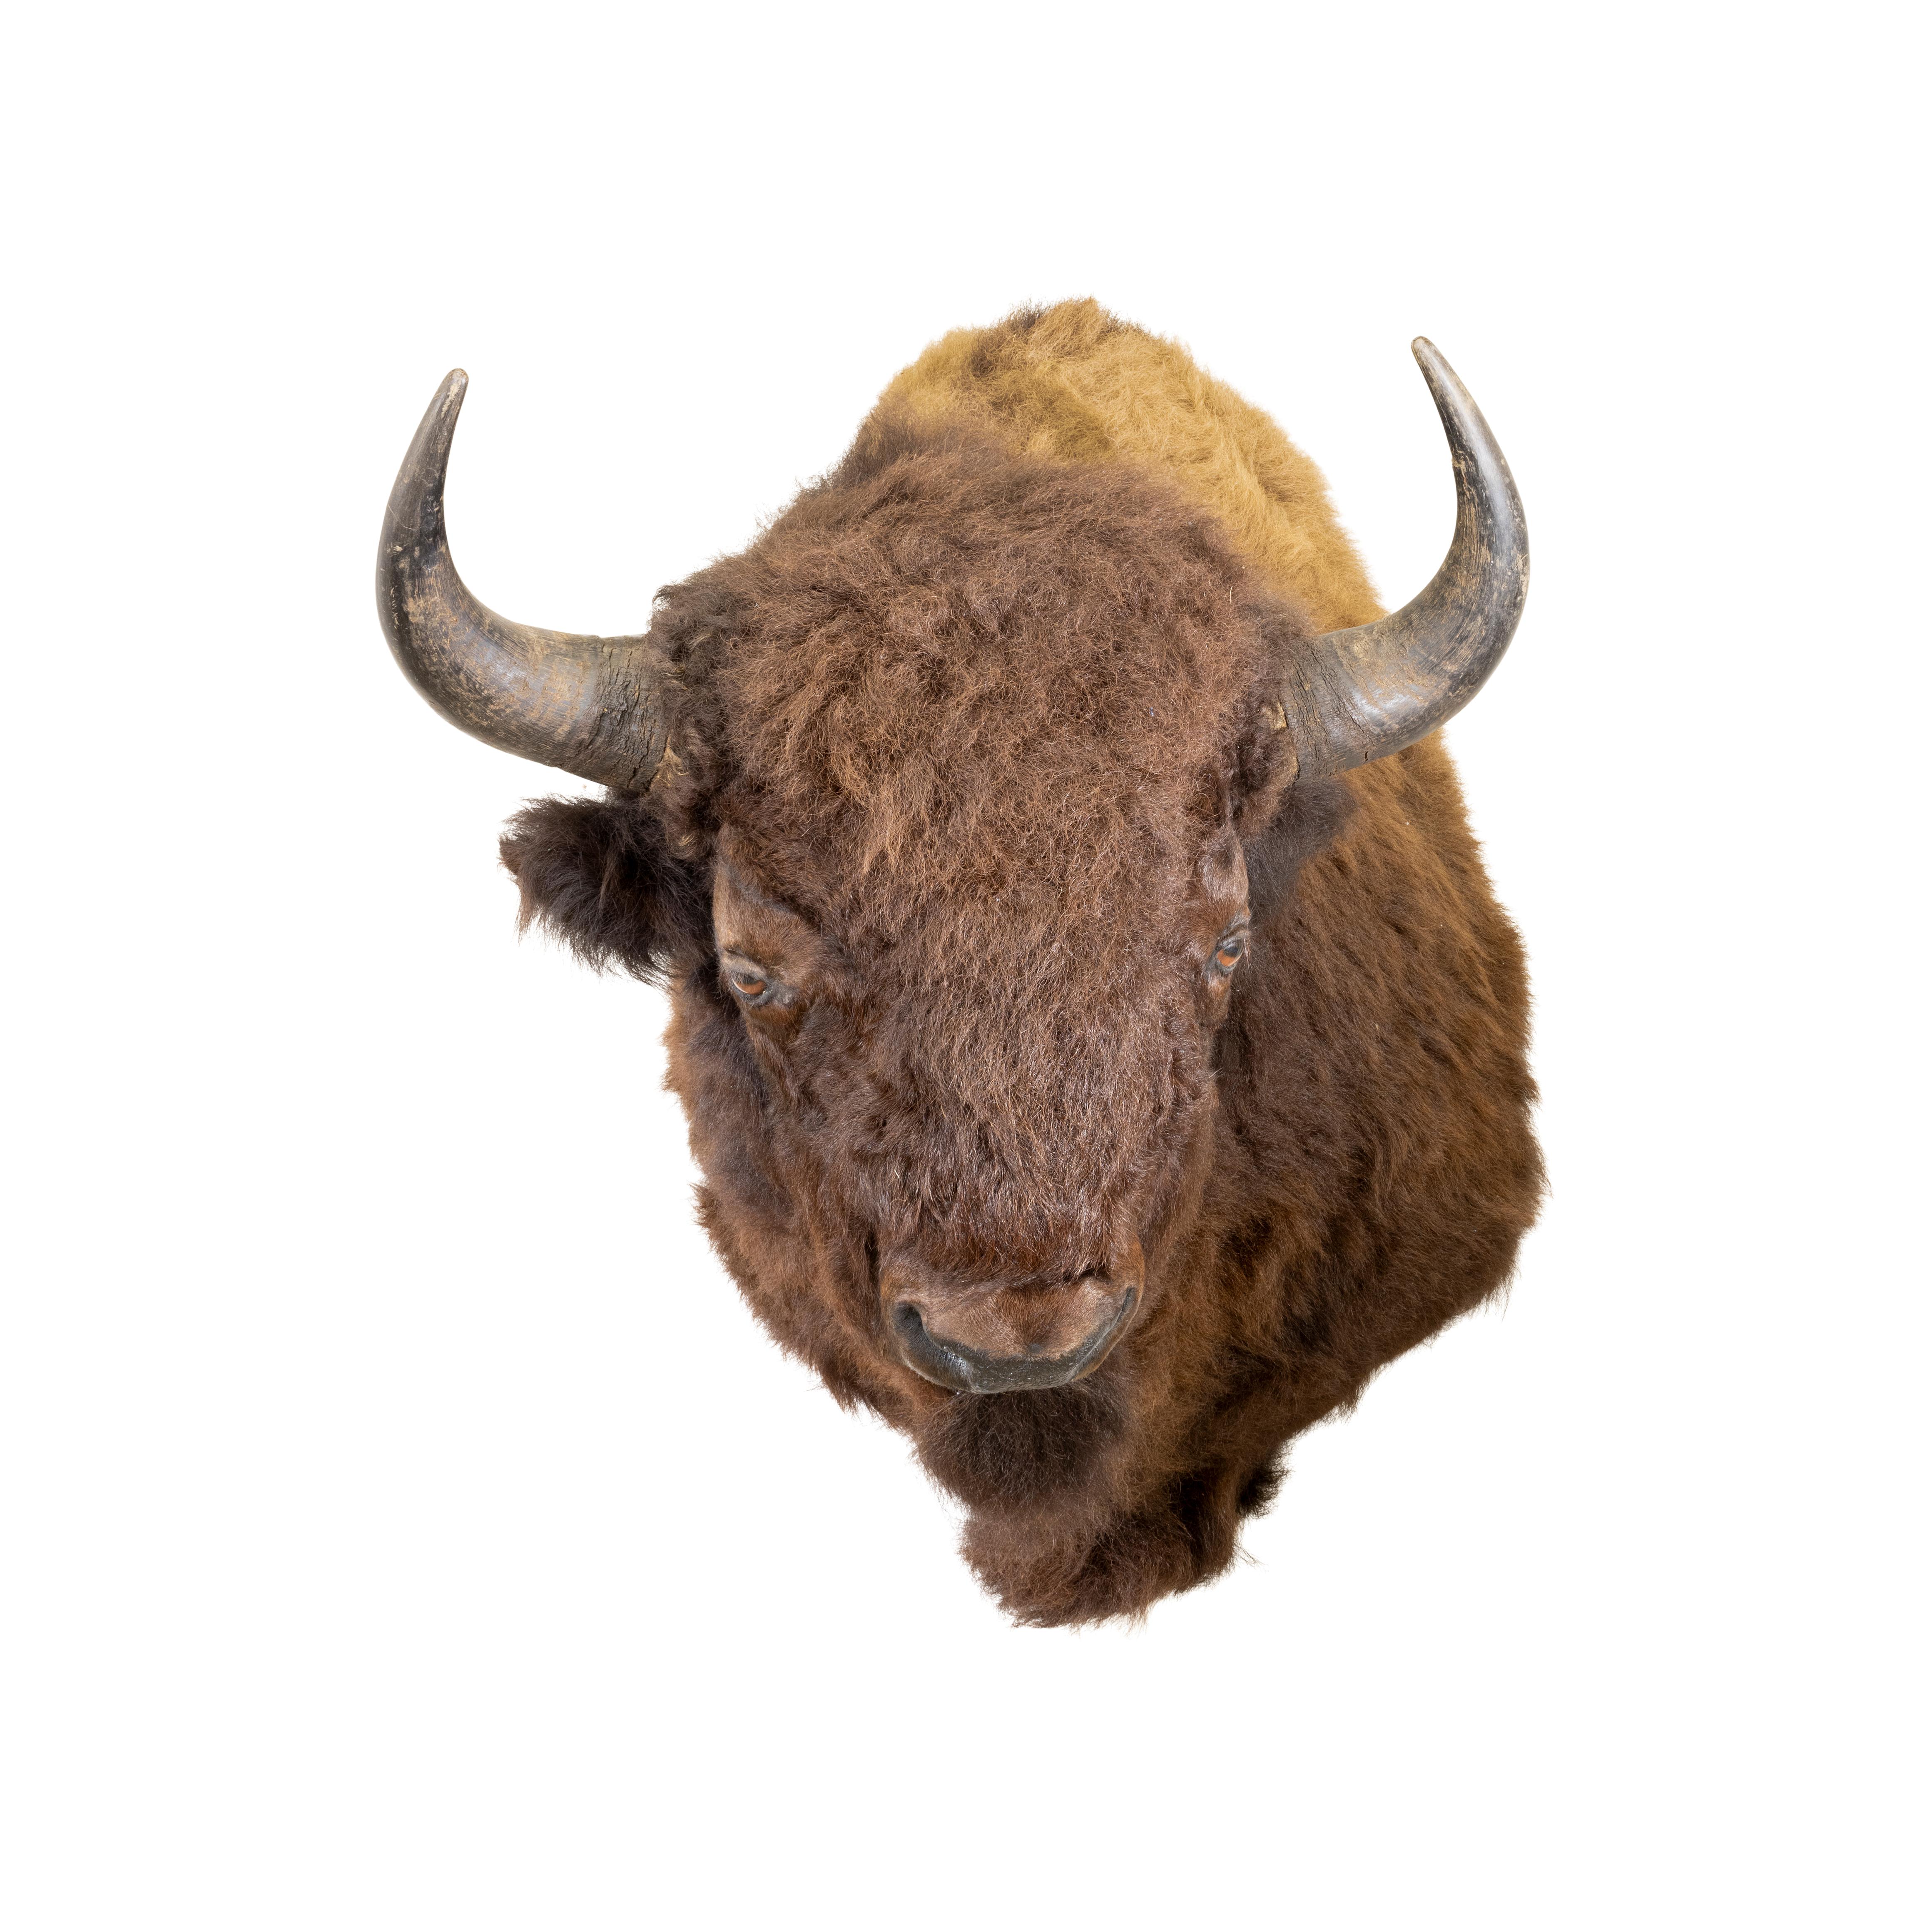 Montana Büffel Bison Taxidermie Mount. Diese hübsche zeitgenössische Schulterhalterung hat ein zweifarbiges Fell in hellbraun und schokoladenbraun. Die Hörner sind groß und in gutem Zustand. Die Taxidermie ist realistisch und gut gemacht. Hängt